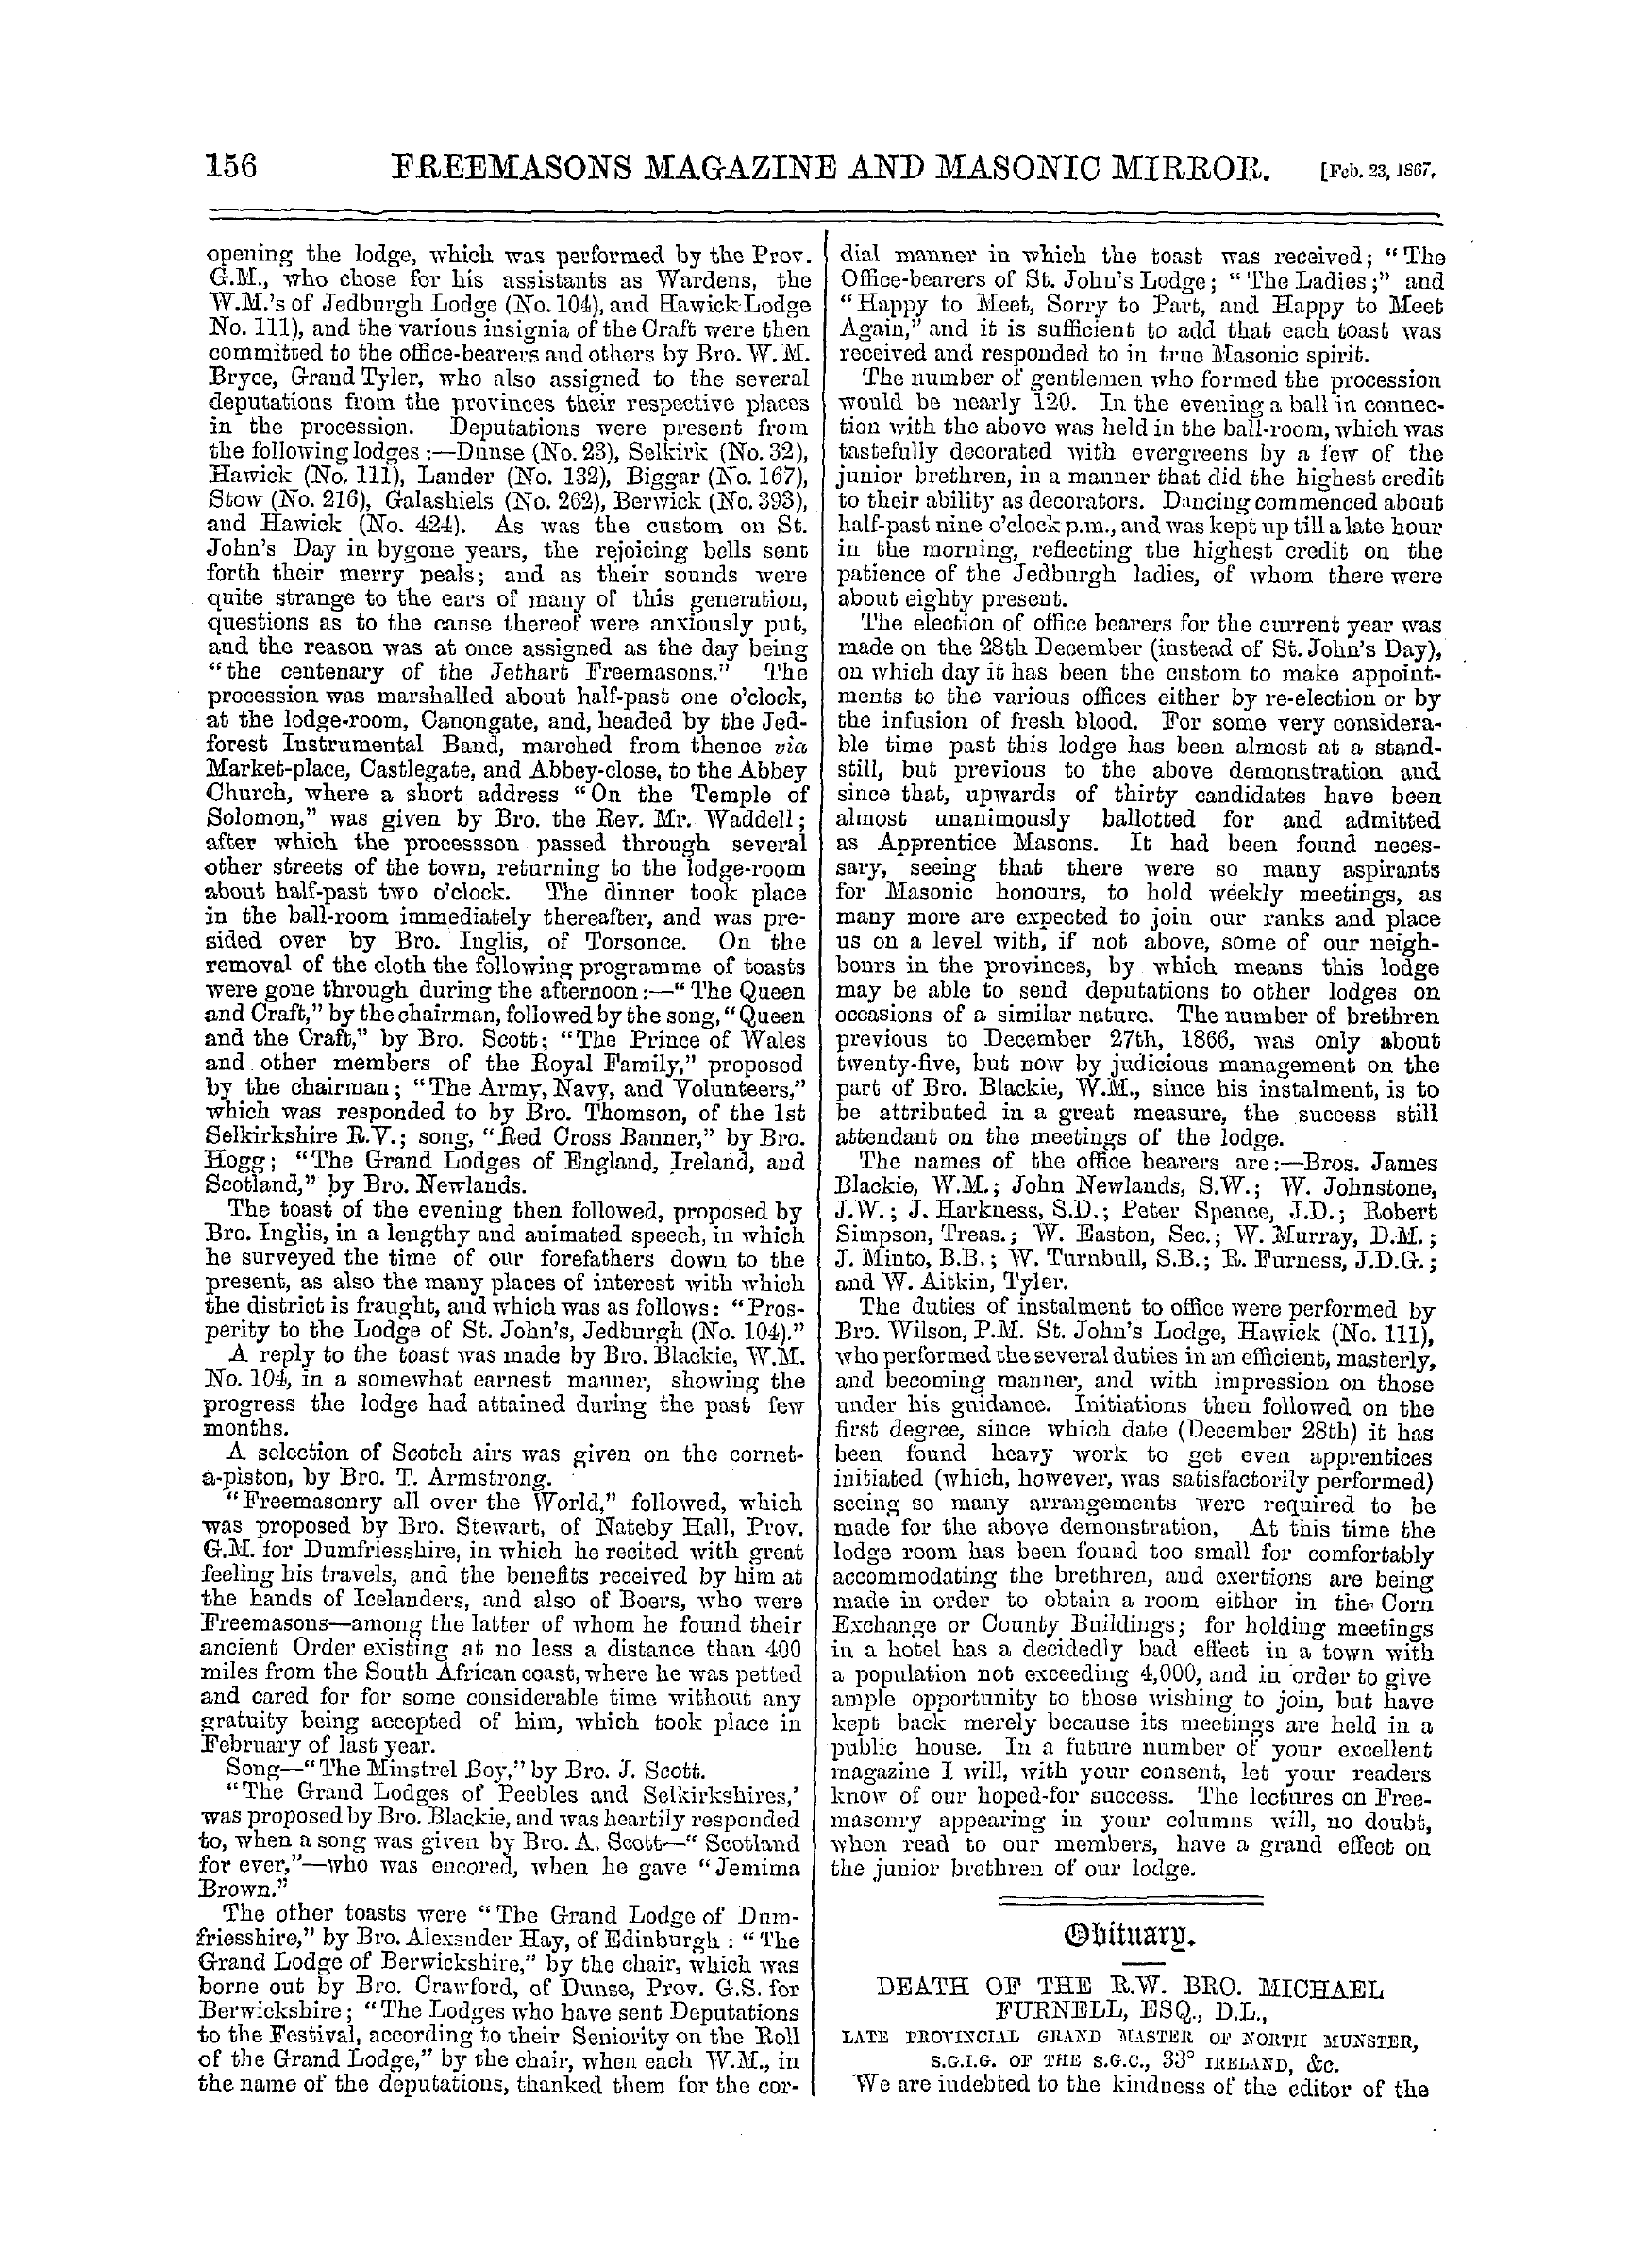 The Freemasons' Monthly Magazine: 1867-02-23: 16